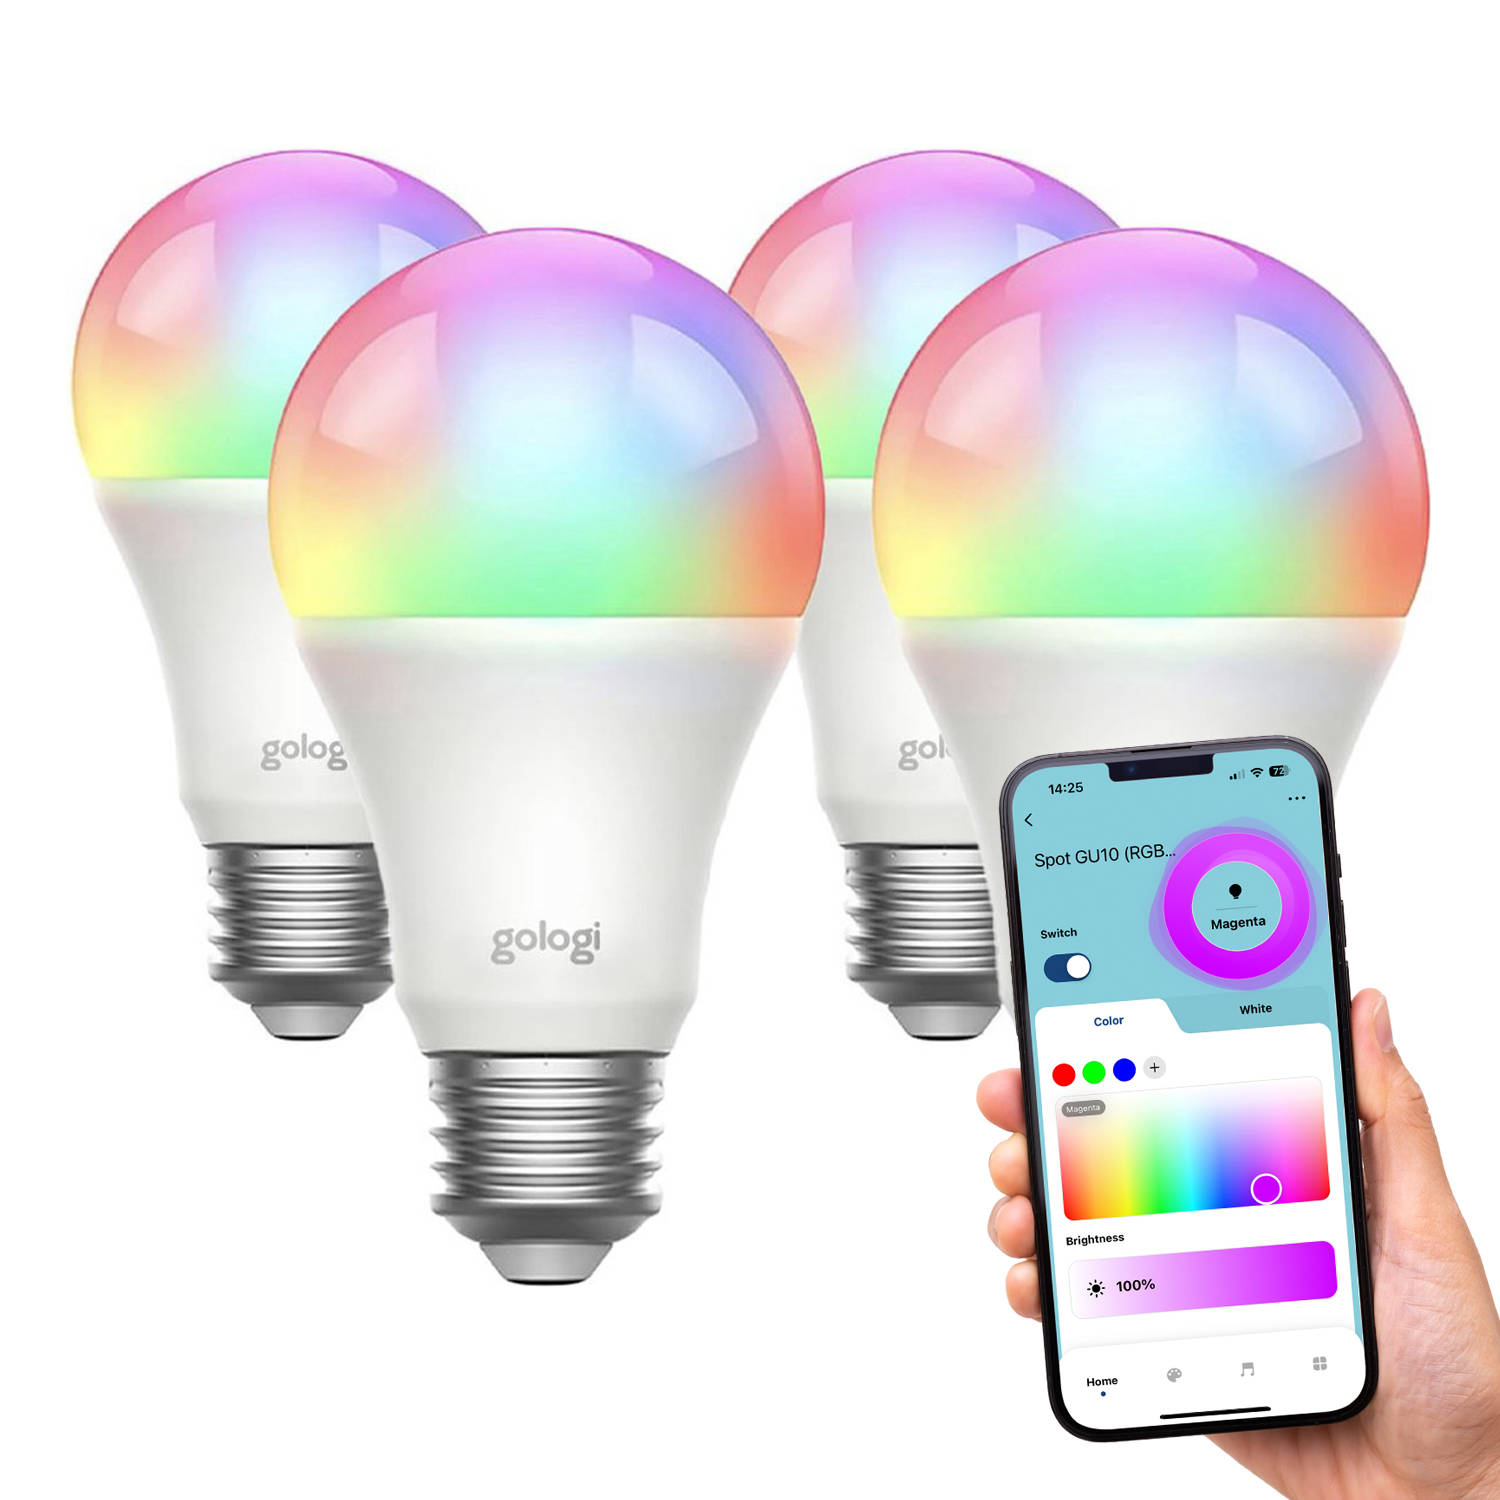 Gologi Slimme E27 Bulb Lamp 4 stuks – Smart WiFi – Smart LED verlichting – Dimbaar – Miljoenen kleuren – RGB – Bediening via mobiele app – Sfeerverlichting – 800 lumen - 4 stuks